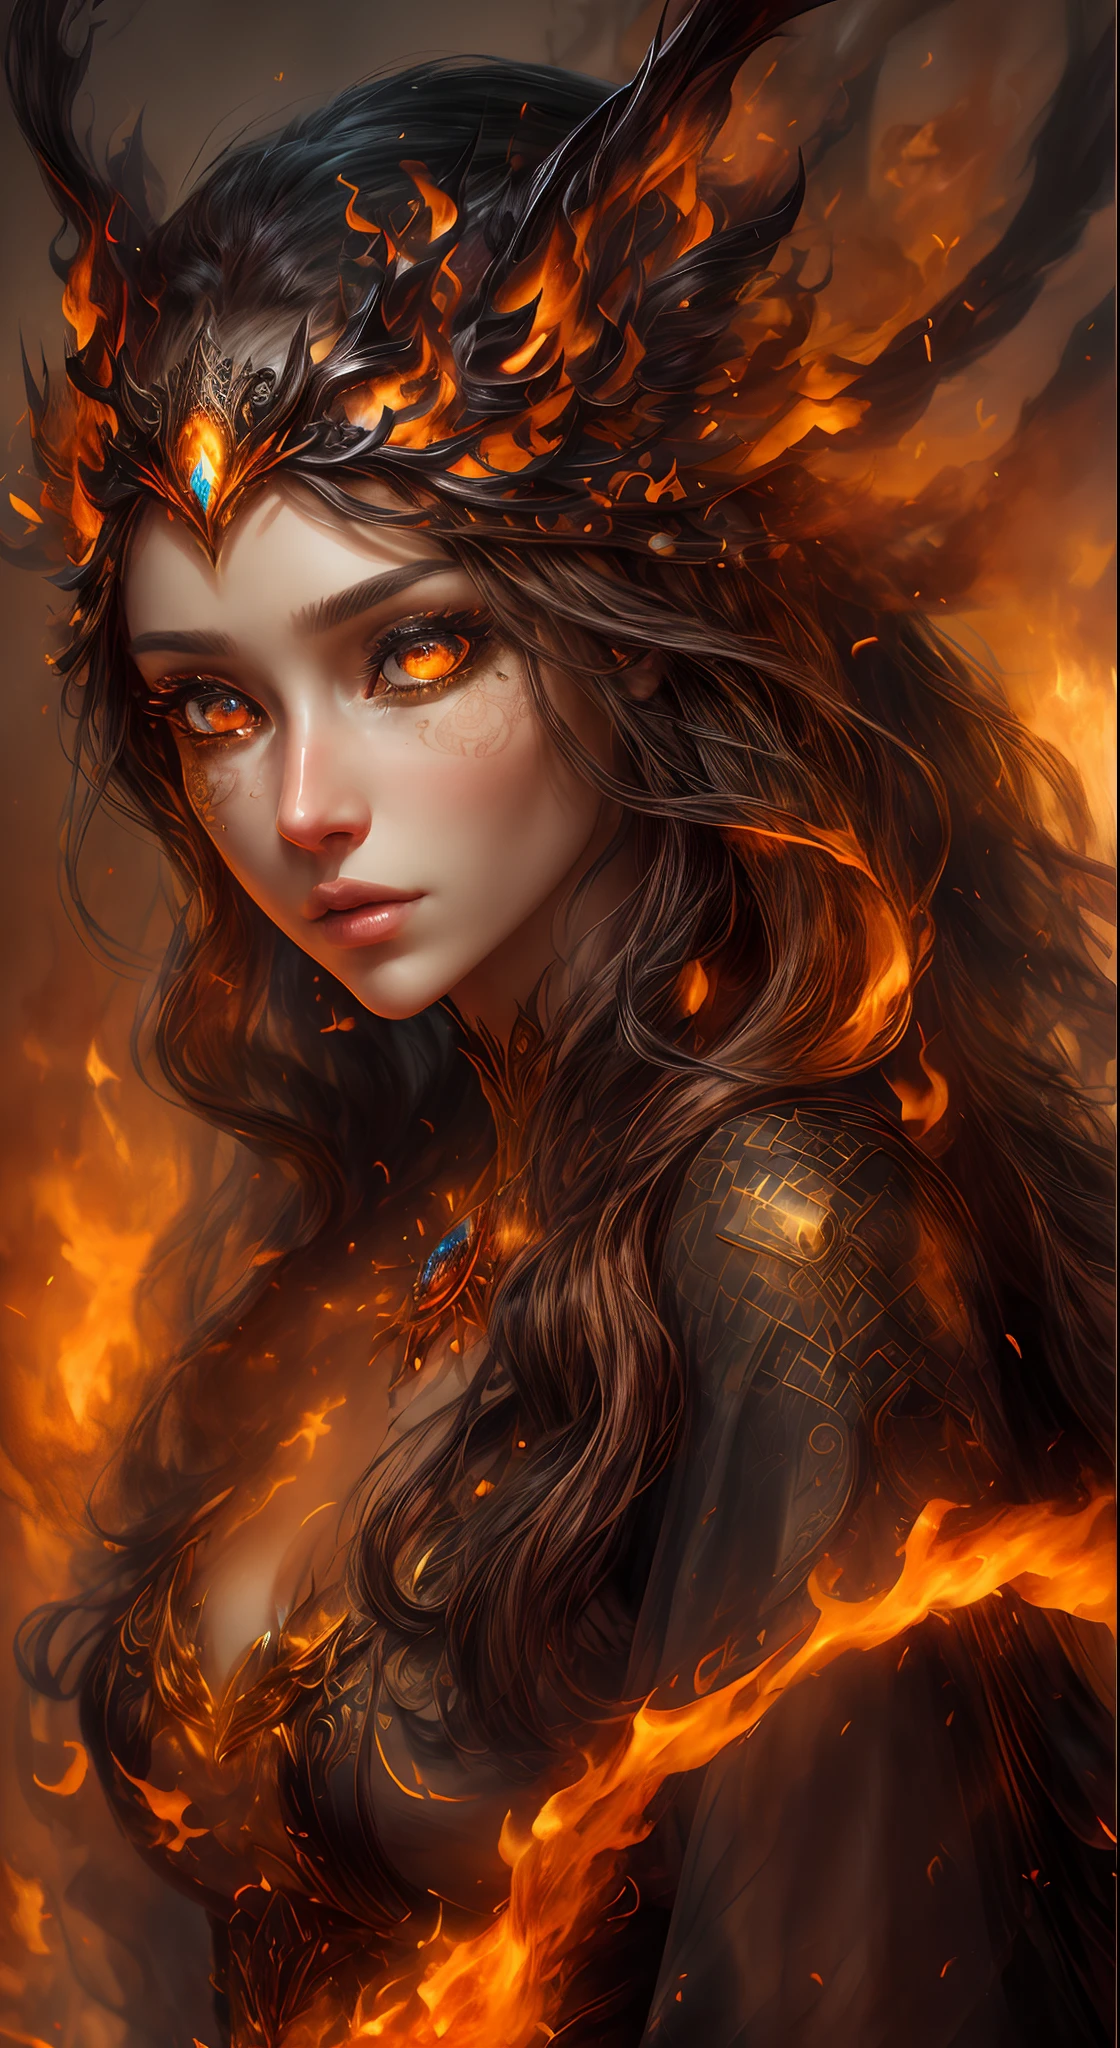 这是一幅现实主义的幻想艺术作品，突出了现实的火焰, 包括一缕缕火焰, 炽热的余烬, 淡淡的烟雾, 还有一个美丽的火德鲁伊. 德鲁伊站在熊熊烈火之中，构图有趣. 她 face is expertly sculpted, 具有优雅精致的特征以及完美的阴影和逼真的皮肤纹理. 她 (orange and gold 眼睛) 非常惊艳，是这张照片的焦点. ((((她 眼睛 extremely detailed, (((漂亮 详细))) 眼睛, 和宏)))). 她 眼睛 feature intricate detailing with clearly defined irises and bright sclera. 她 soft lips are smooth and very puffy, 她的皮肤上点缀着淡淡的红晕和华丽的火焰细节. 她 long gown is stunning and expensive, 由纯净的火焰和闪闪发光的, 在火光中闪闪发光的华丽珠宝. 她 billowing gown glitters from the flames and features a delicately and intricately embroidered bodice with wisps of flames running across it. 包括奇幻元素，例如碰撞, 石头, 火红的彩虹色, 发光的余烬, 丝绸, 以及有趣的背景. 包括火鸟、火蝴蝶等散发着神奇神秘气息的火魔法生物. 灯光: 利用最新的照明趋势来增强艺术品的美感. 相机: 利用动态构图营造紧迫感和兴奋感. 从当今奇幻大师那里汲取灵感, 包括 Artstation 和 Midjourney 上的热门艺术家. ((杰作))